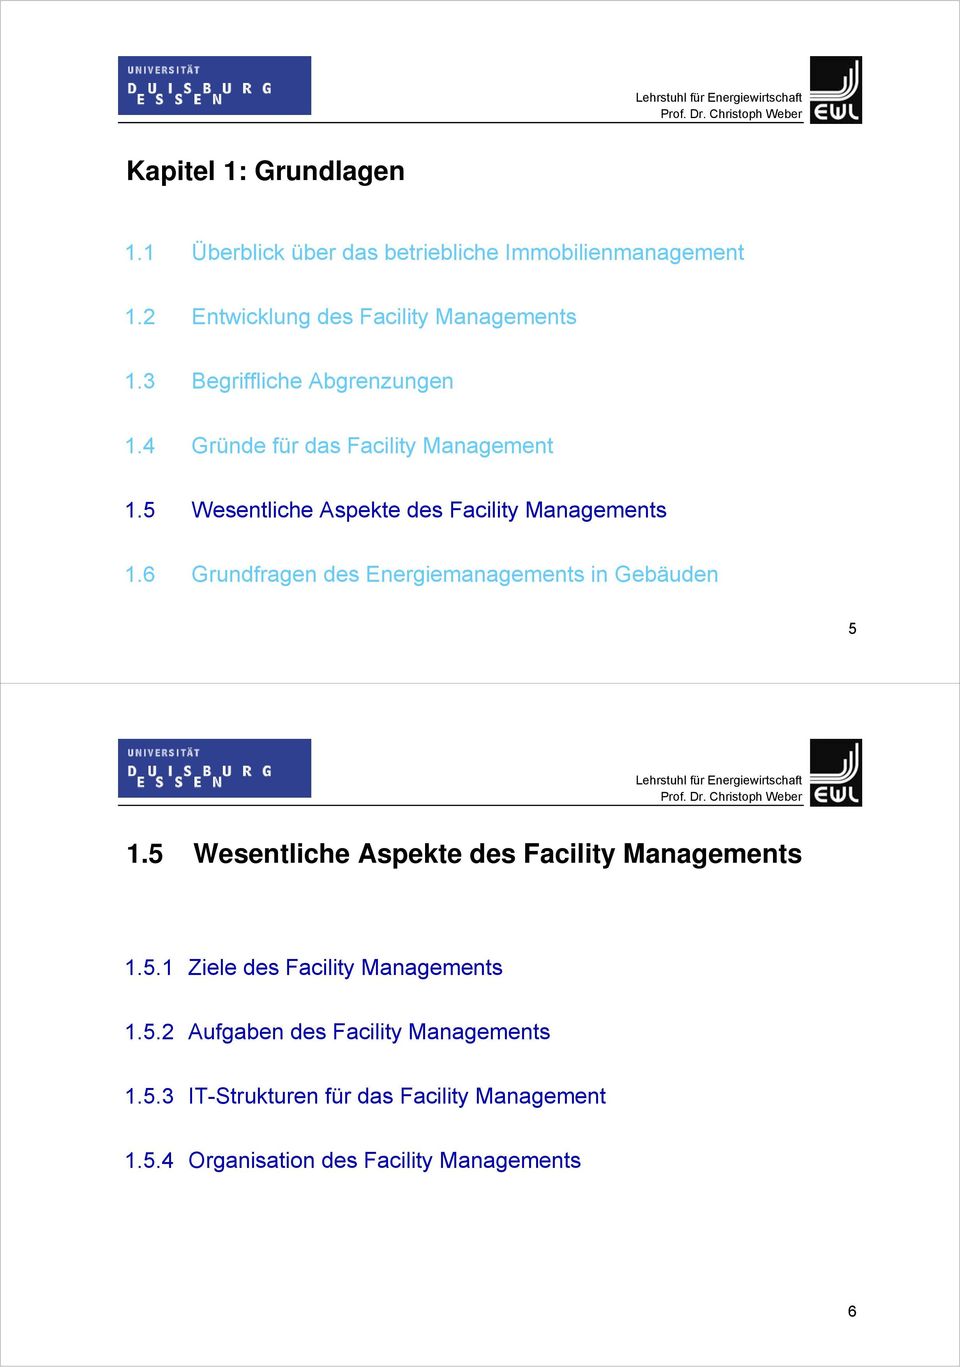 6 Grundfragen des Energiemanagements in Gebäuden 5 1.5 Wesentliche Aspekte des Facility Managements 1.5.1 Ziele des Facility Managements 1.